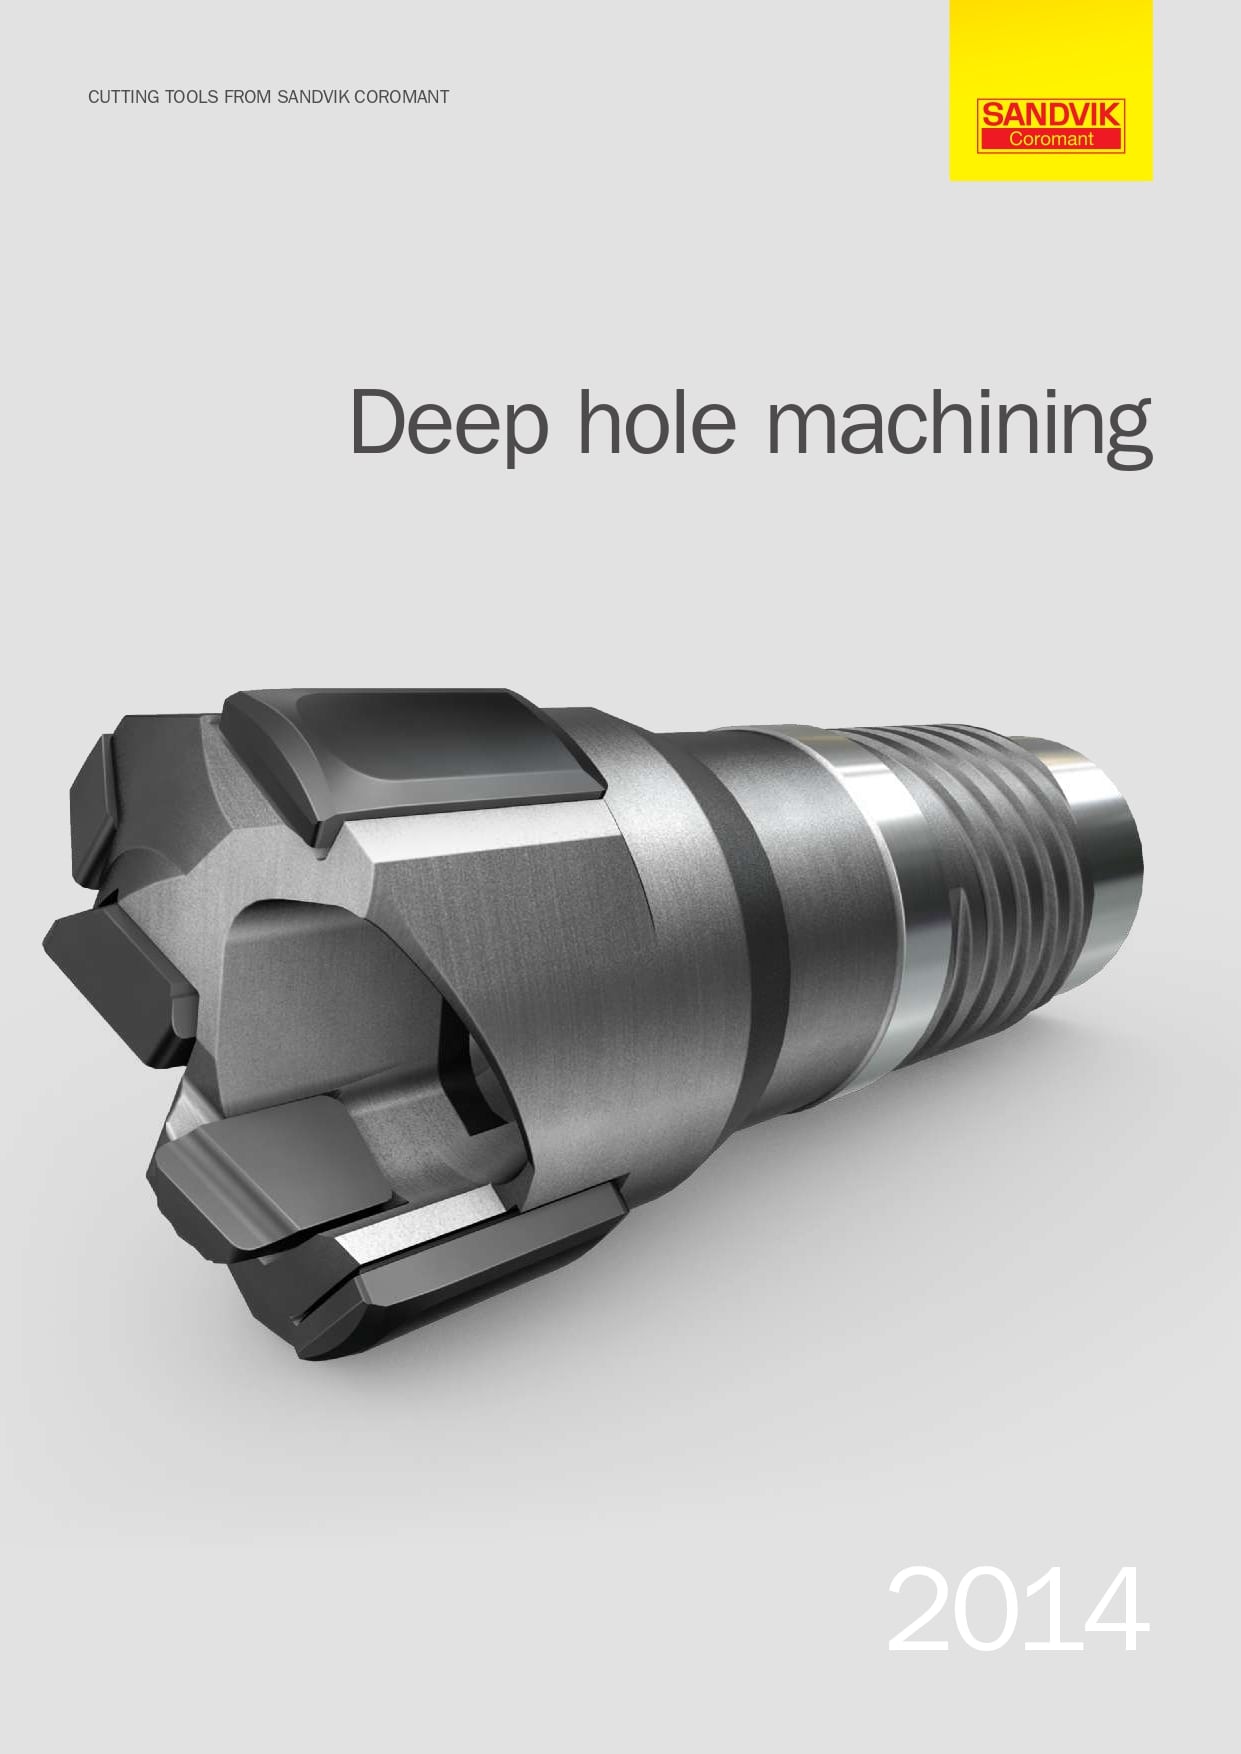 Deep hole machining - Обработка глубоких отверстий